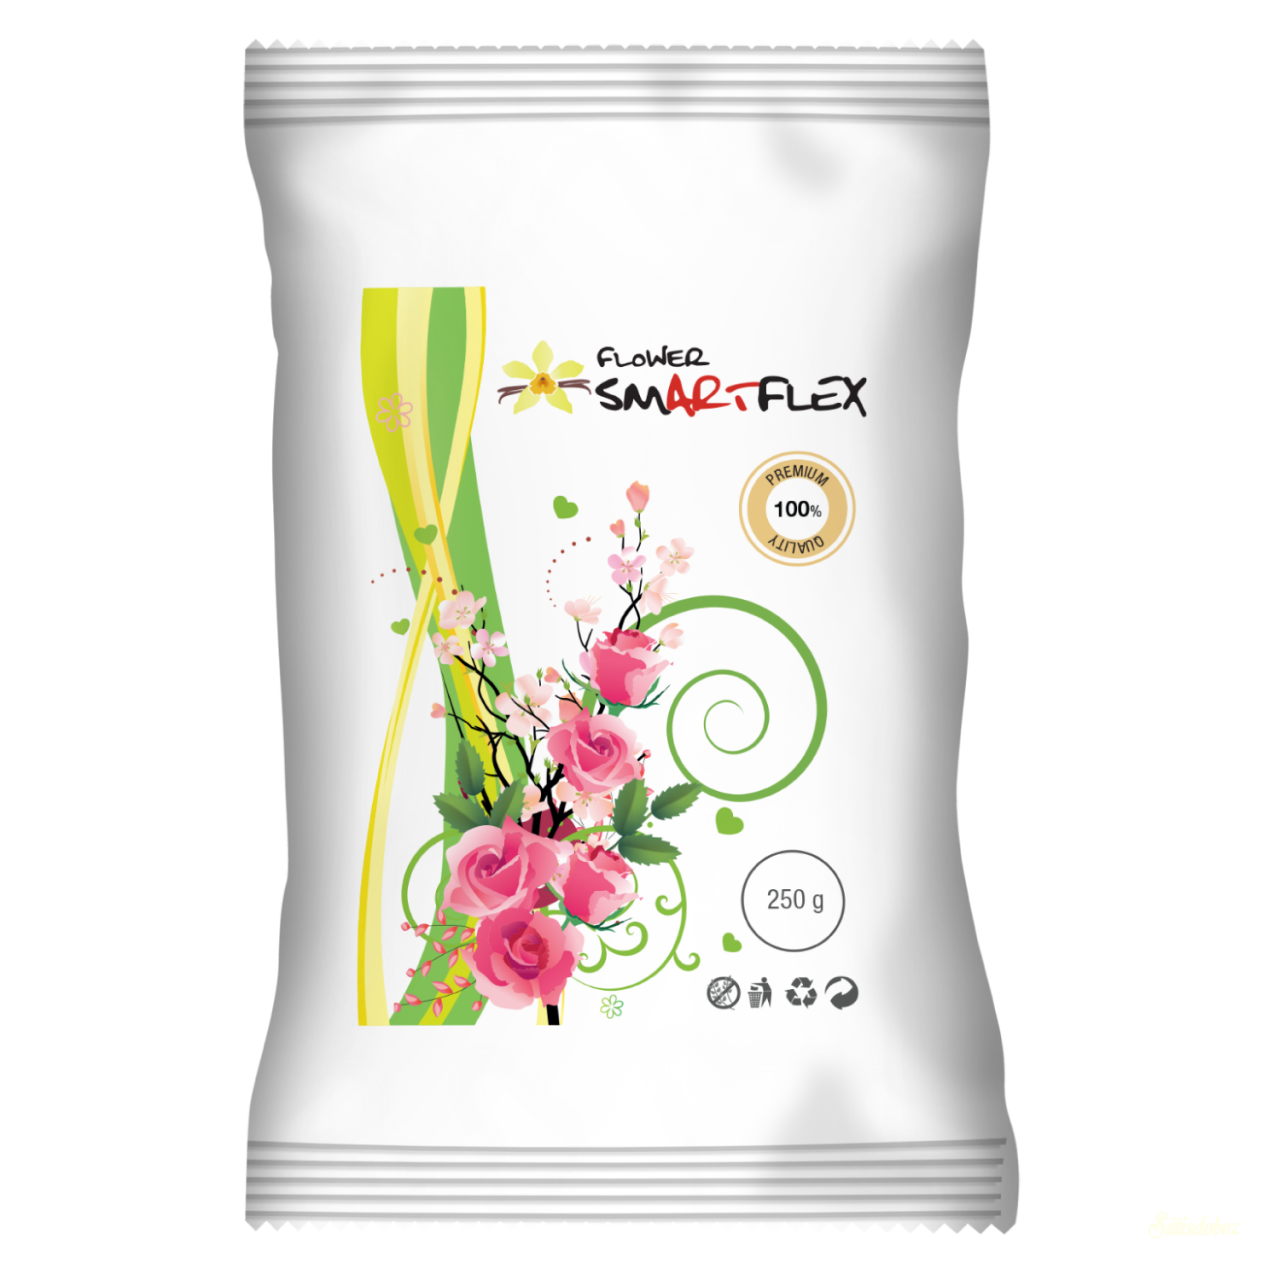 Smartflex Flower virágmassza 250g